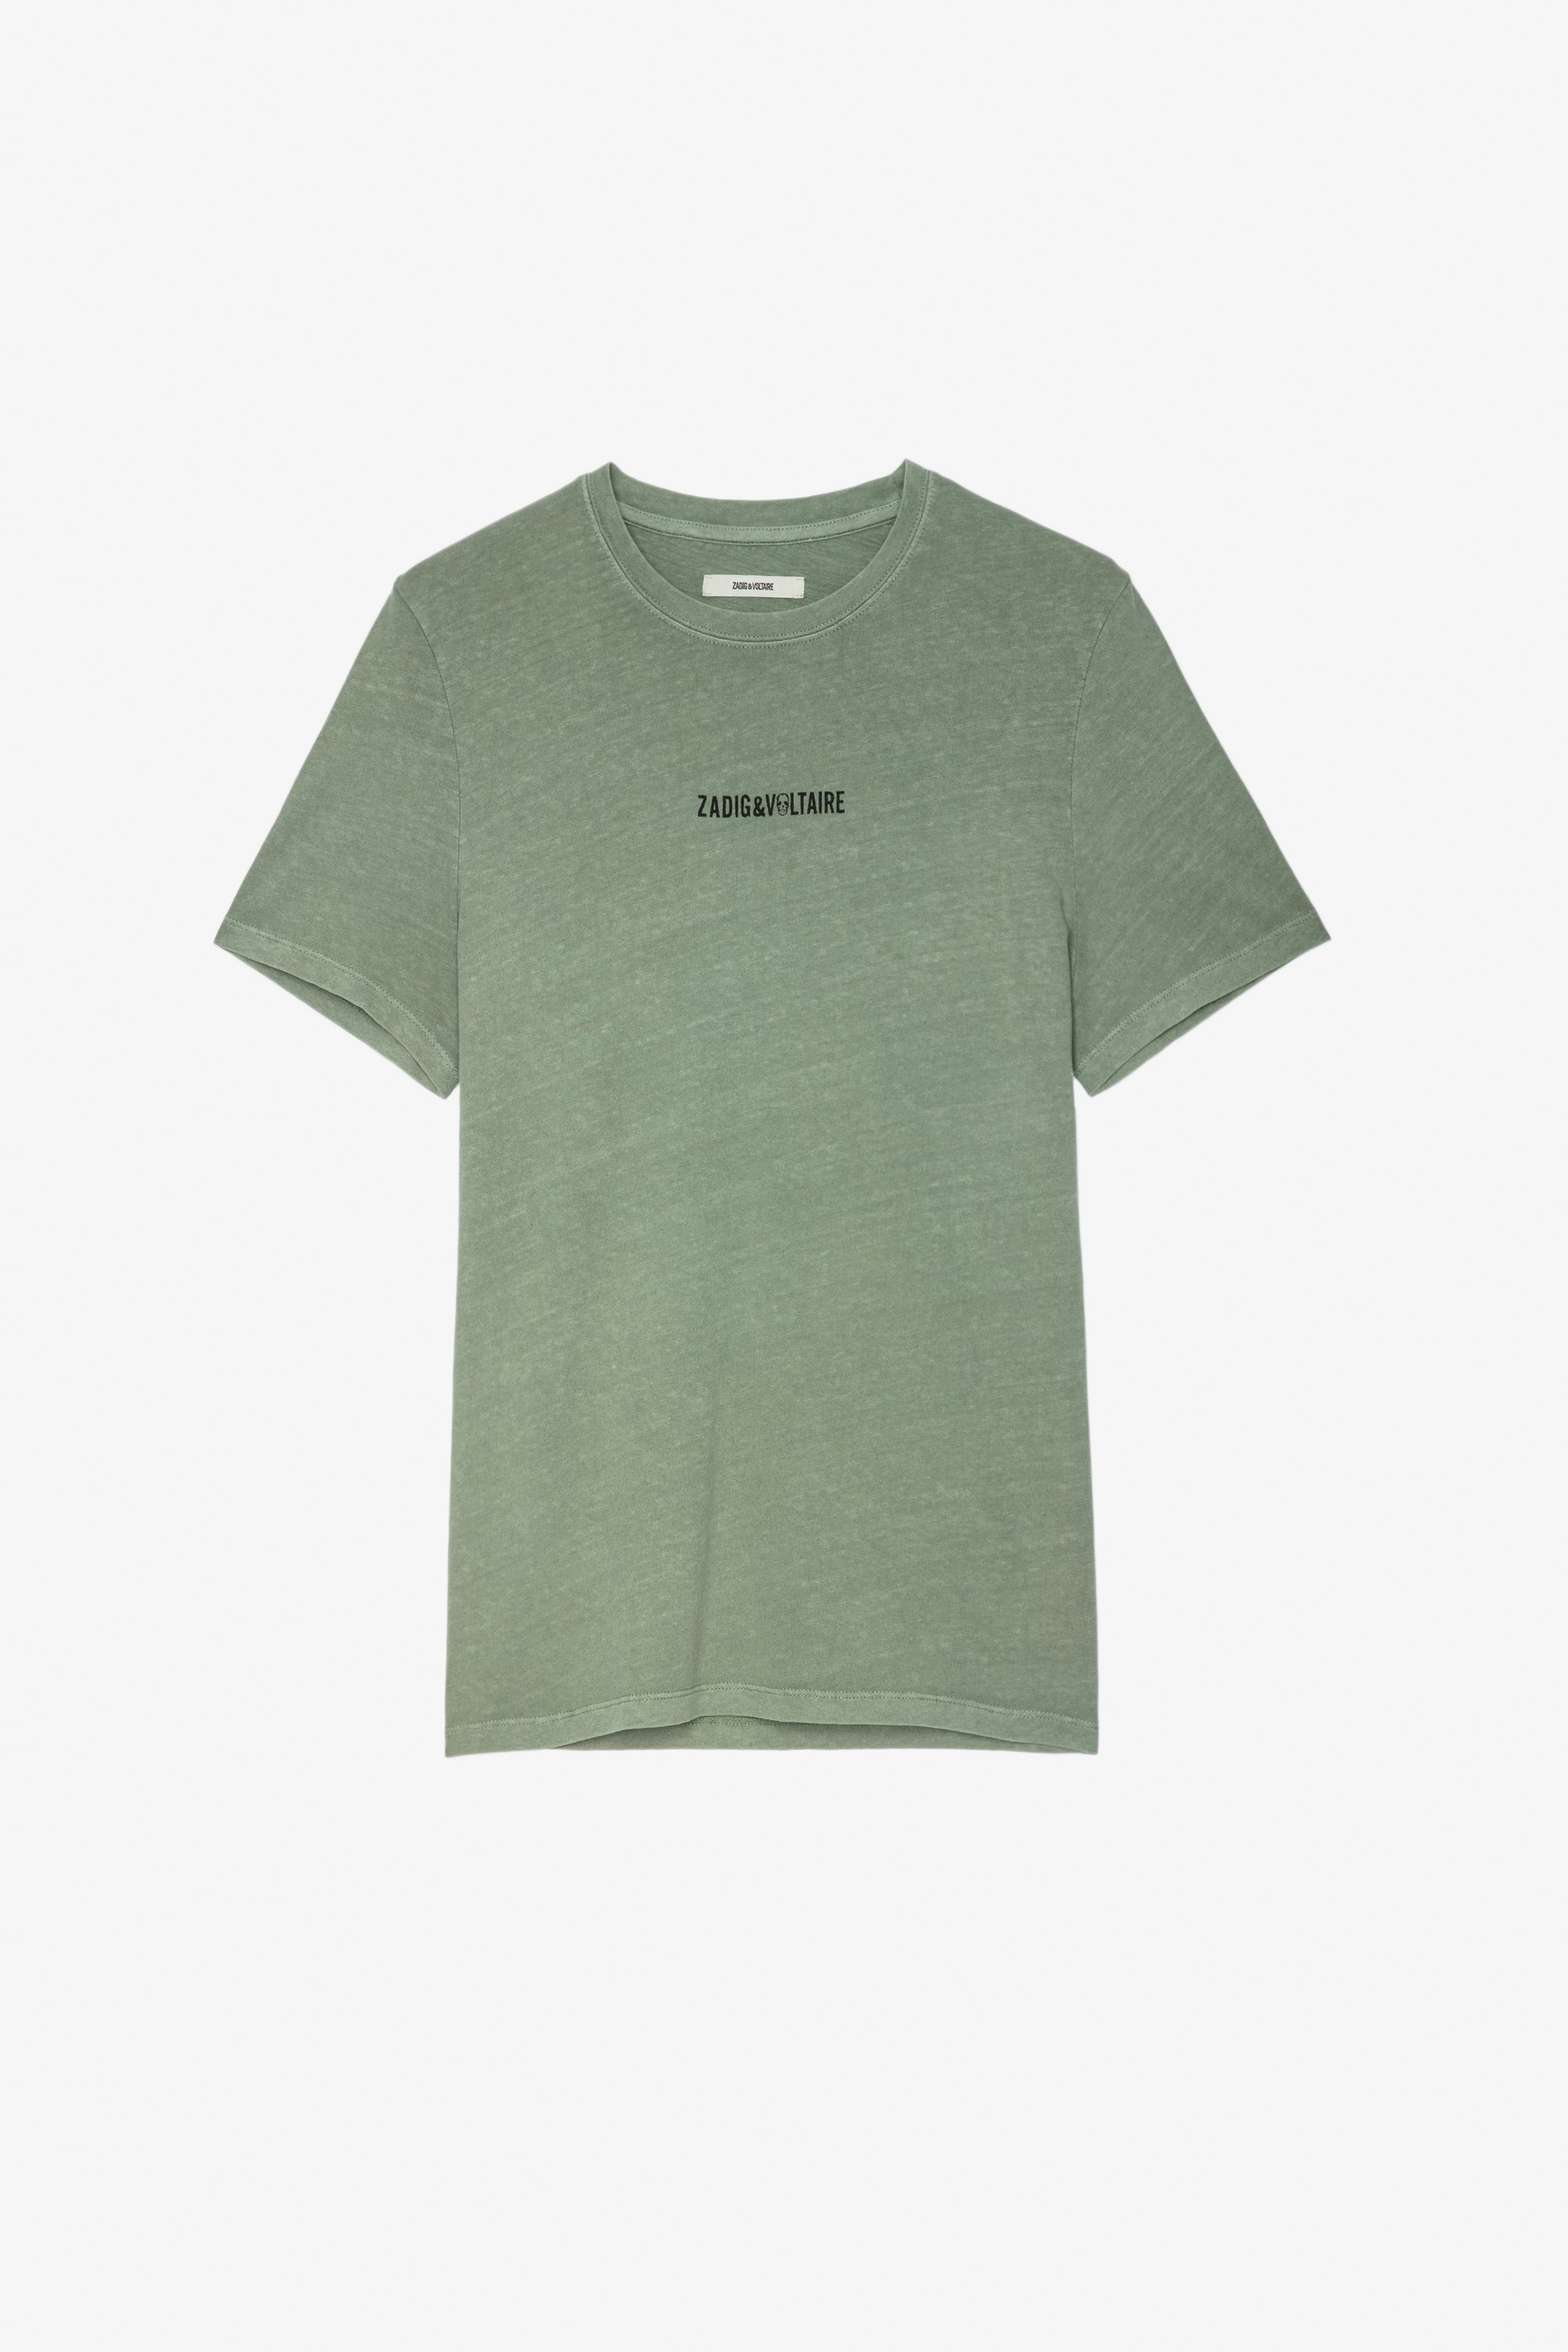 T-Shirt Ted Herren-T-Shirt aus grüner Baumwolle mit ZV-Signatur auf der Vorderseite und „Hédoniste“-Schriftzug auf der Rückseite